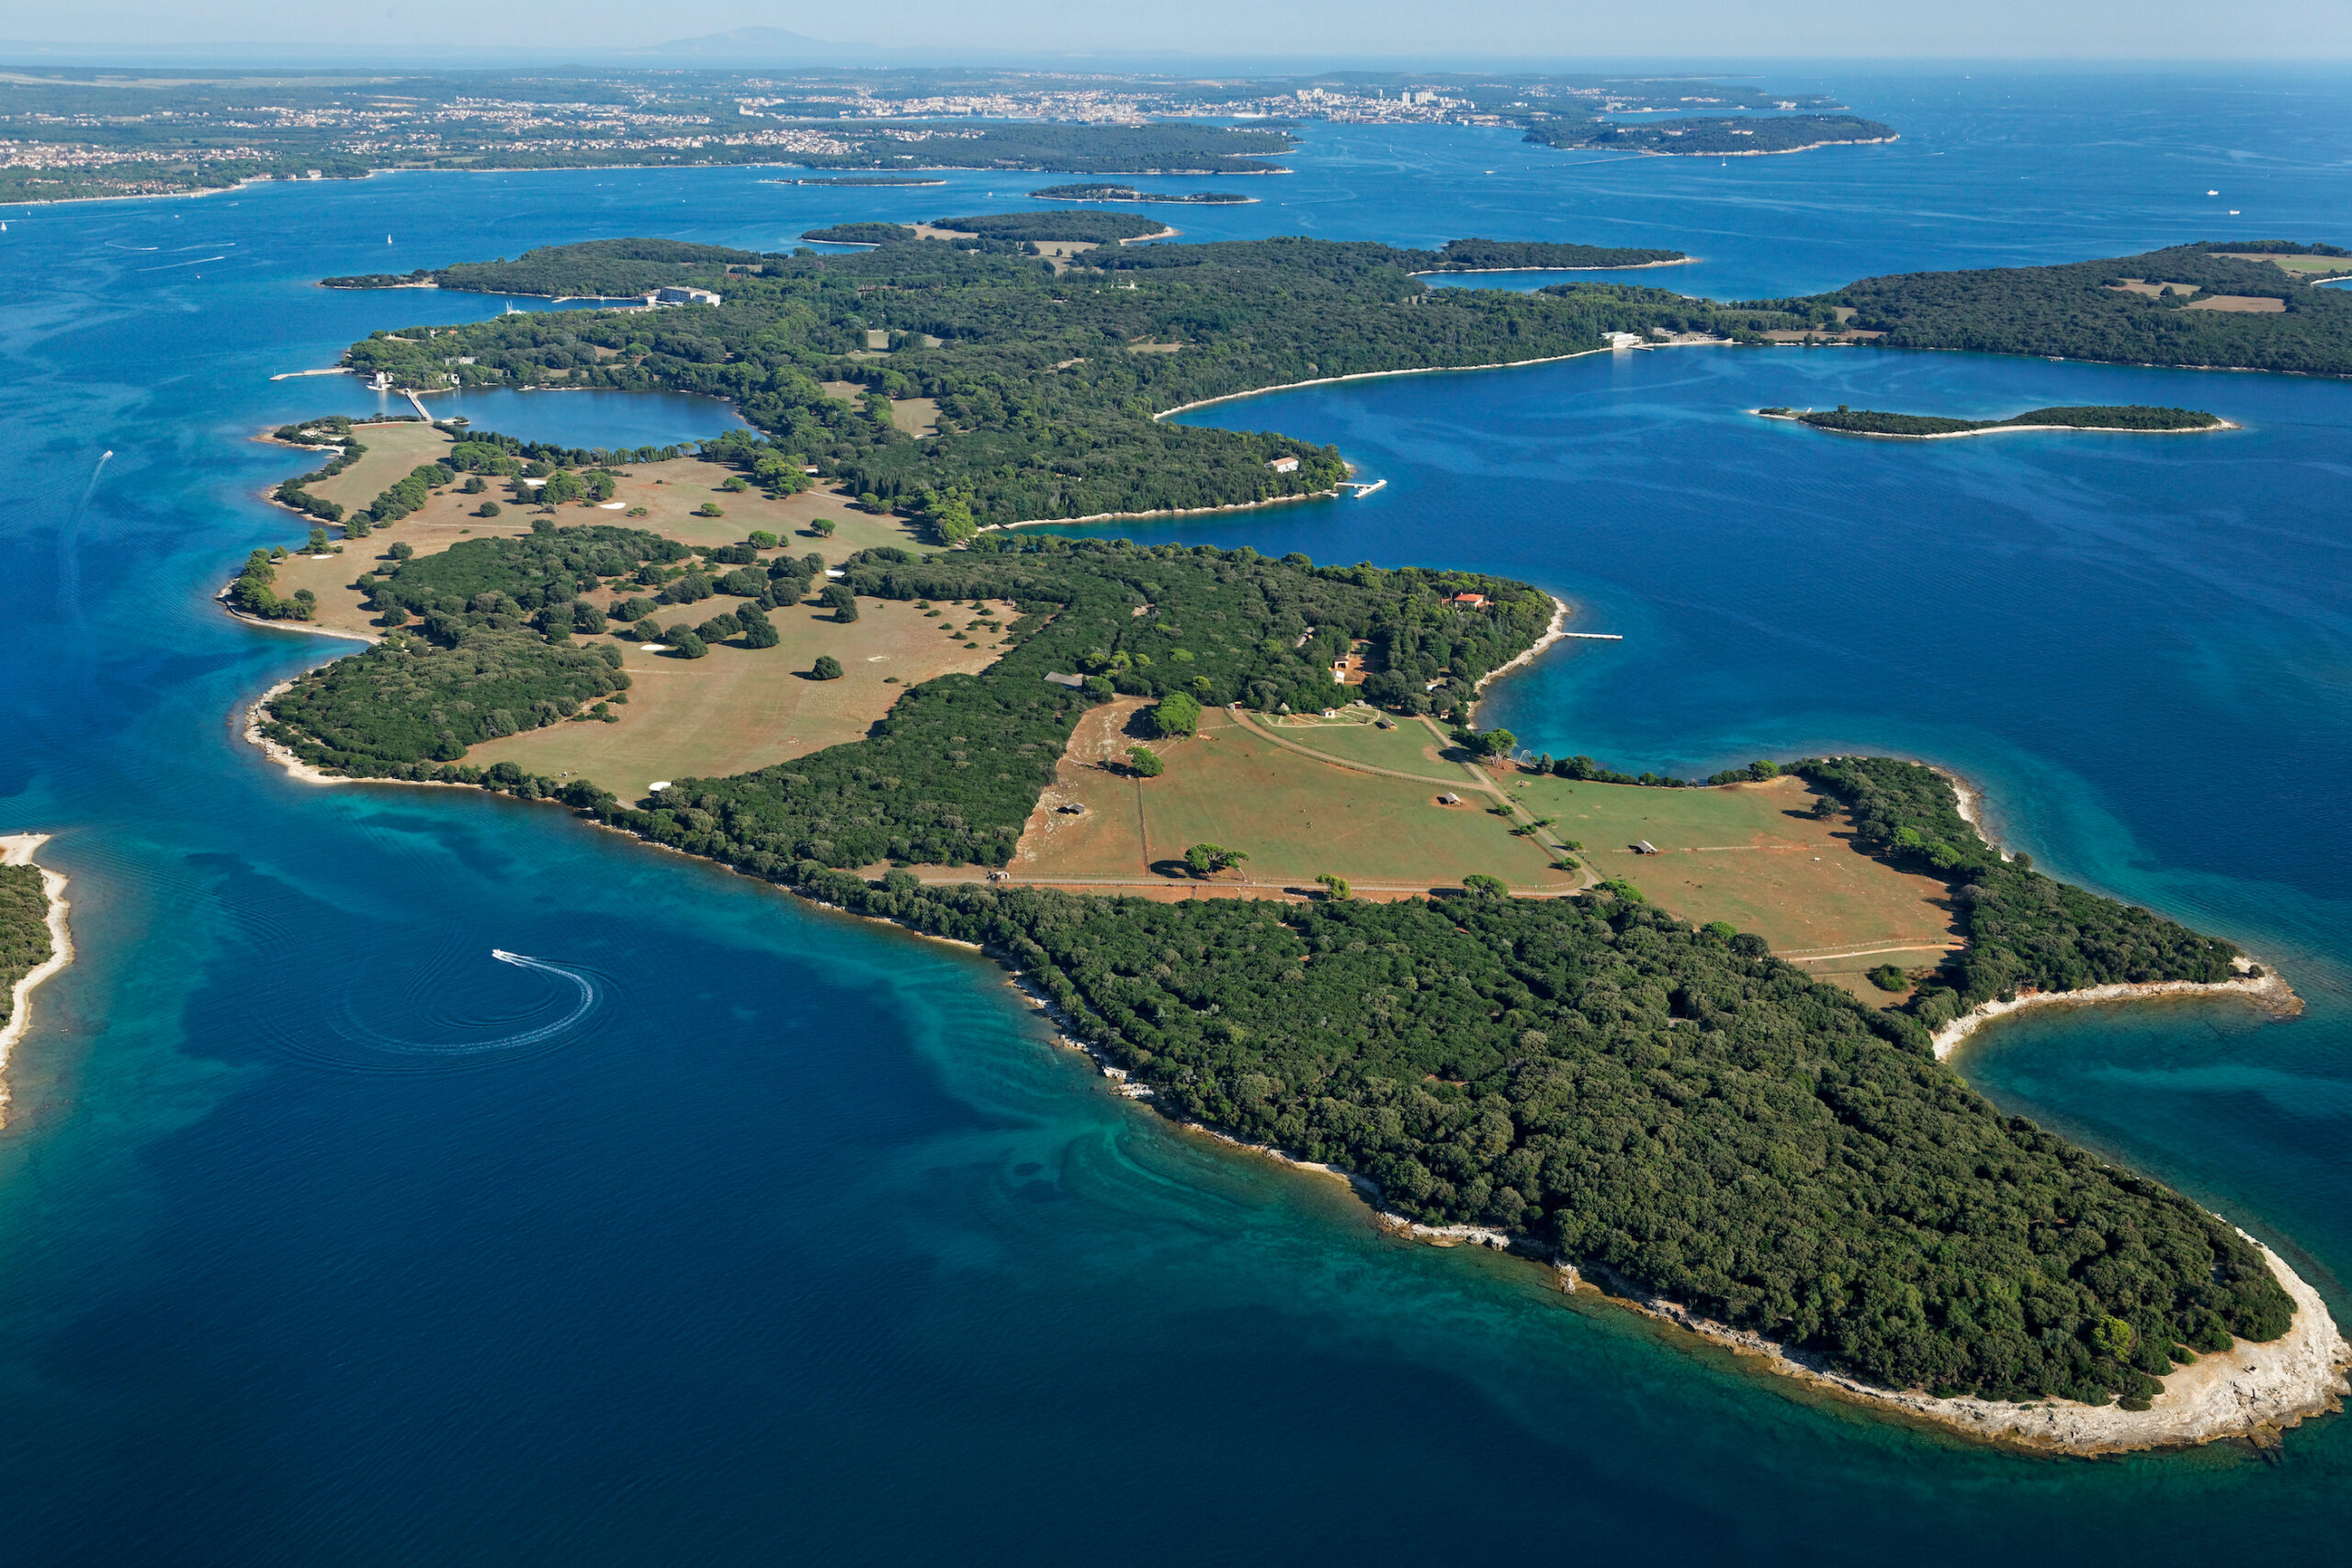 Archipelago Islands off of the coast of Croatia